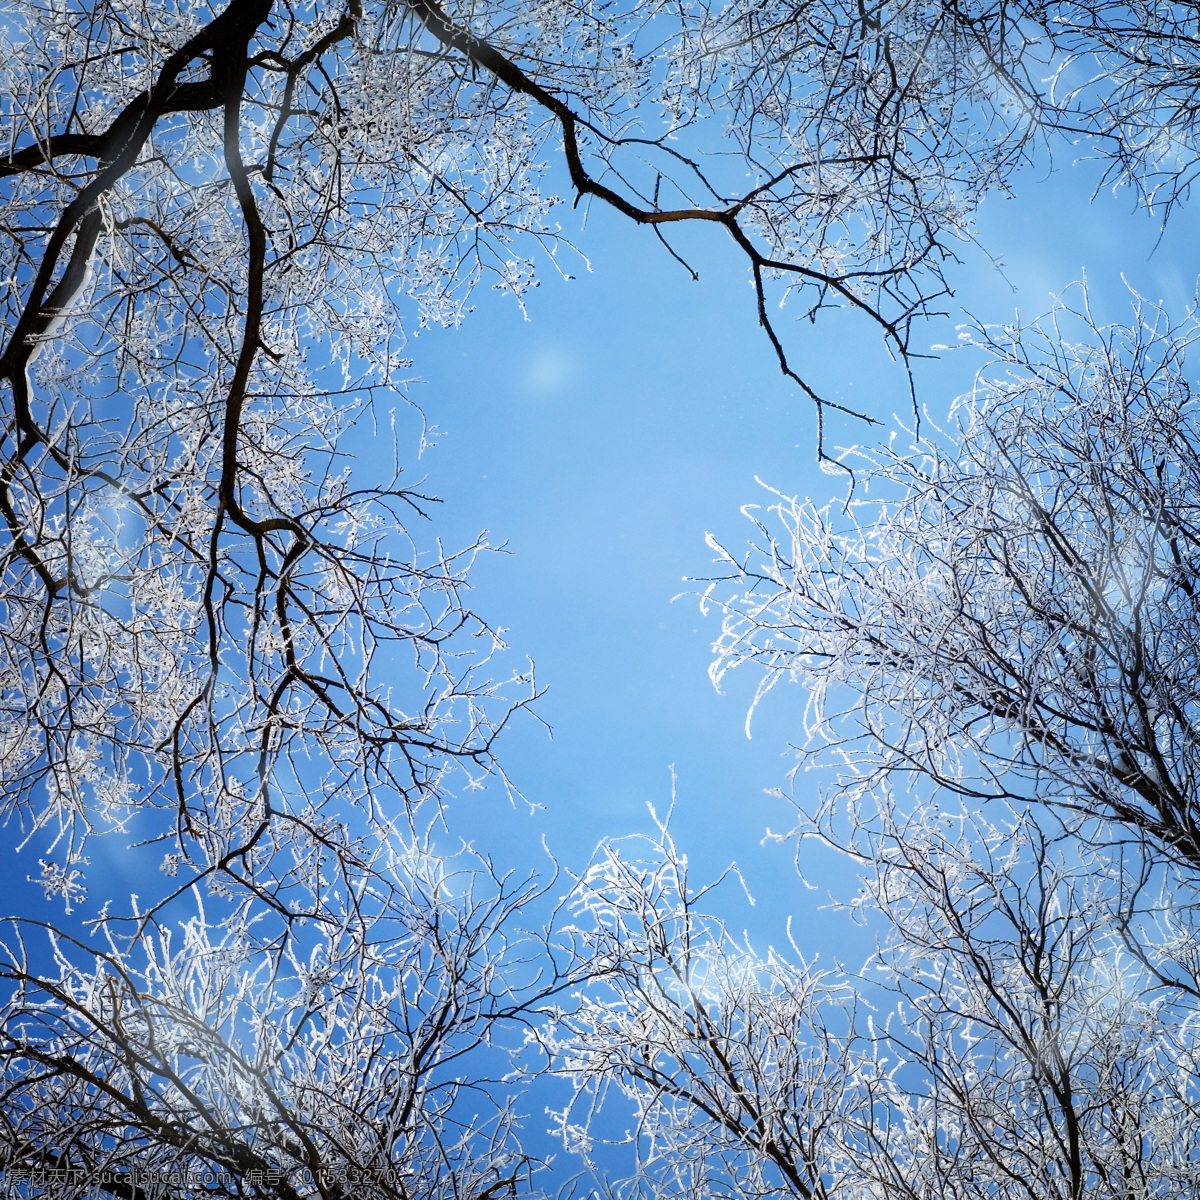 冬季 冬天 雪景 美丽风景 景色 美景 树上积雪 森林 自然风景 自然景观 蓝色